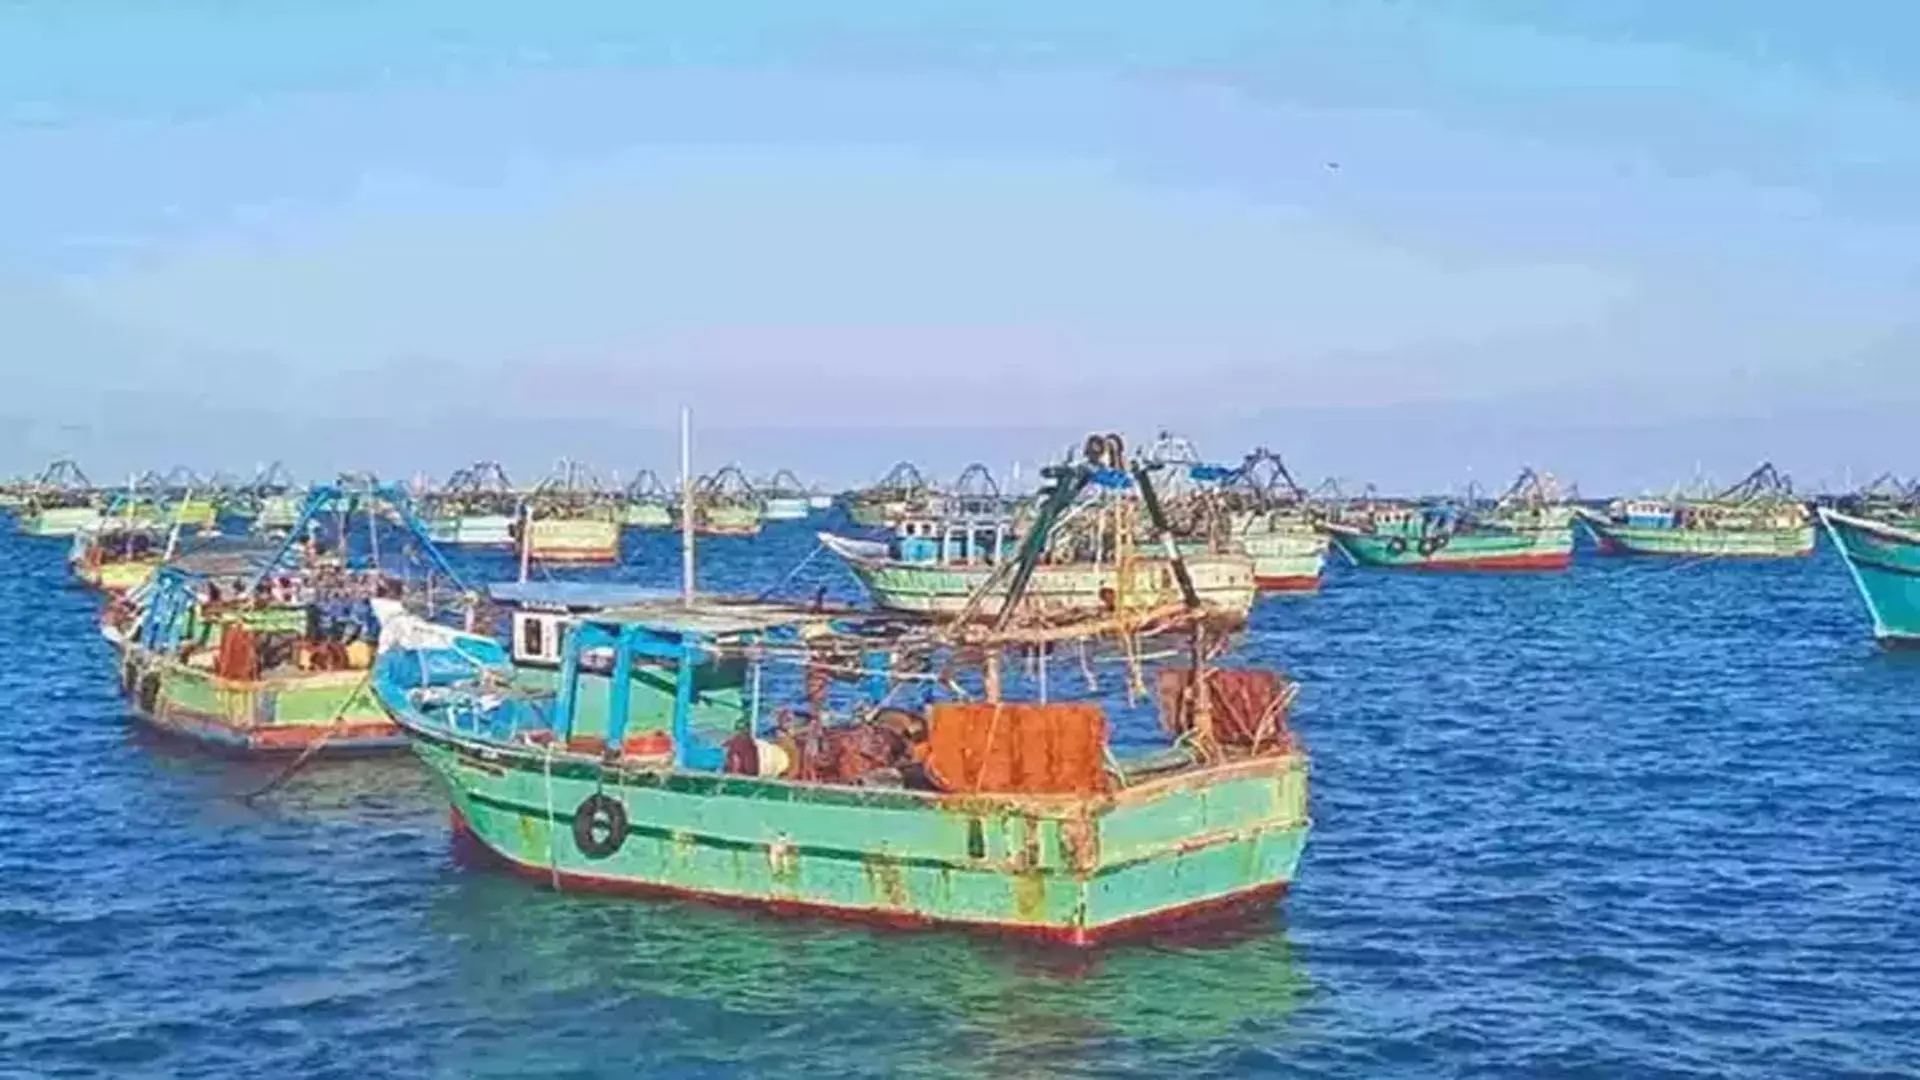 श्रीलंकाई तट रक्षक द्वारा गिरफ्तार किए गए तमिलनाडु के मछुआरे चेन्नई लौट आए